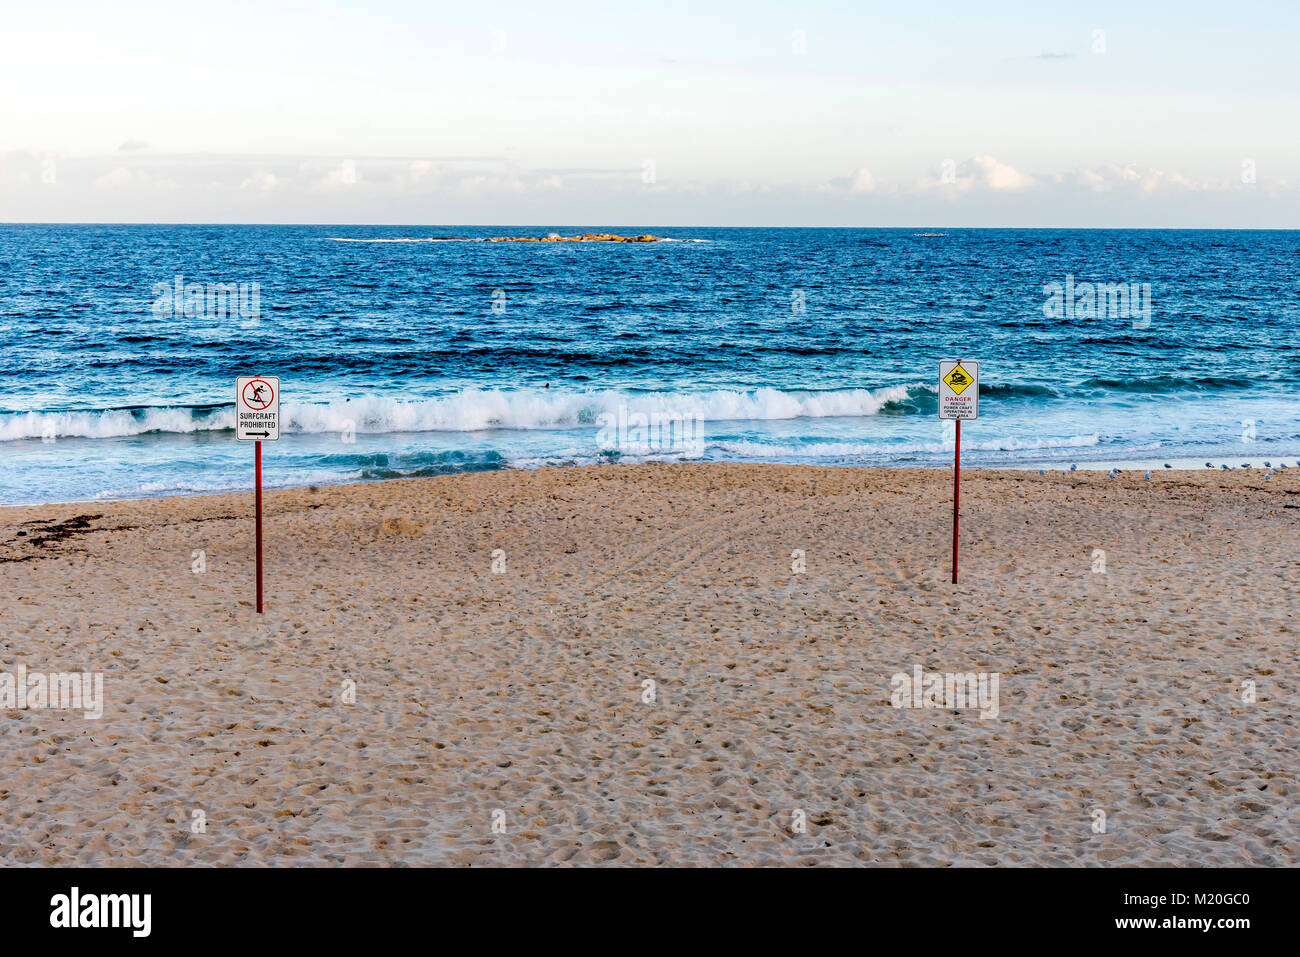 Leeren Strand, ruhigen blauen Pazifischen Ozean, Schilder, sonnigen Tag. Spuren am Strand, ruhige Tasmanischen Meer, Warnschild, Coogee Beach, Sydney, Australien. Stockfoto